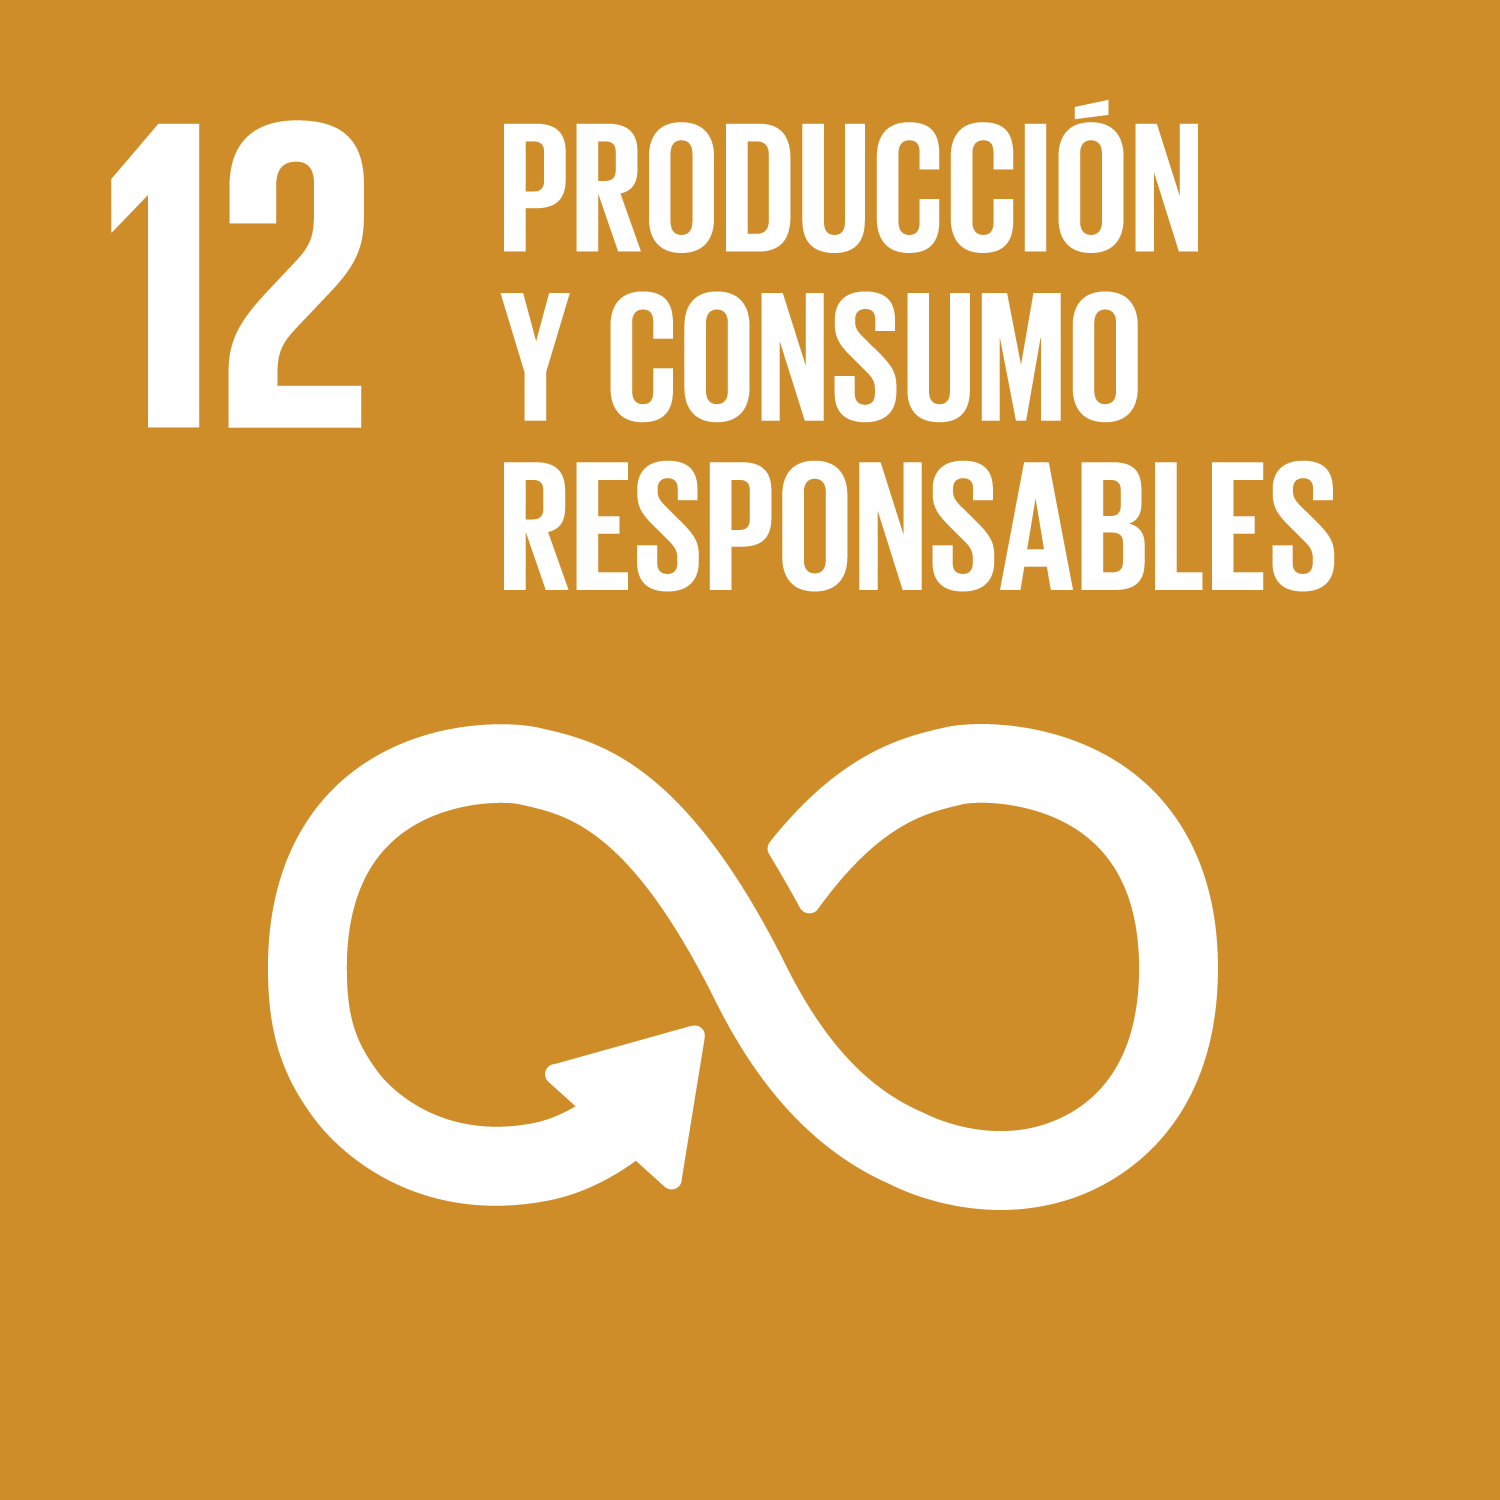 Los Objetivos de Desarrollo Sostenible - Garantizar patrones de consumo y producción sostenibles.